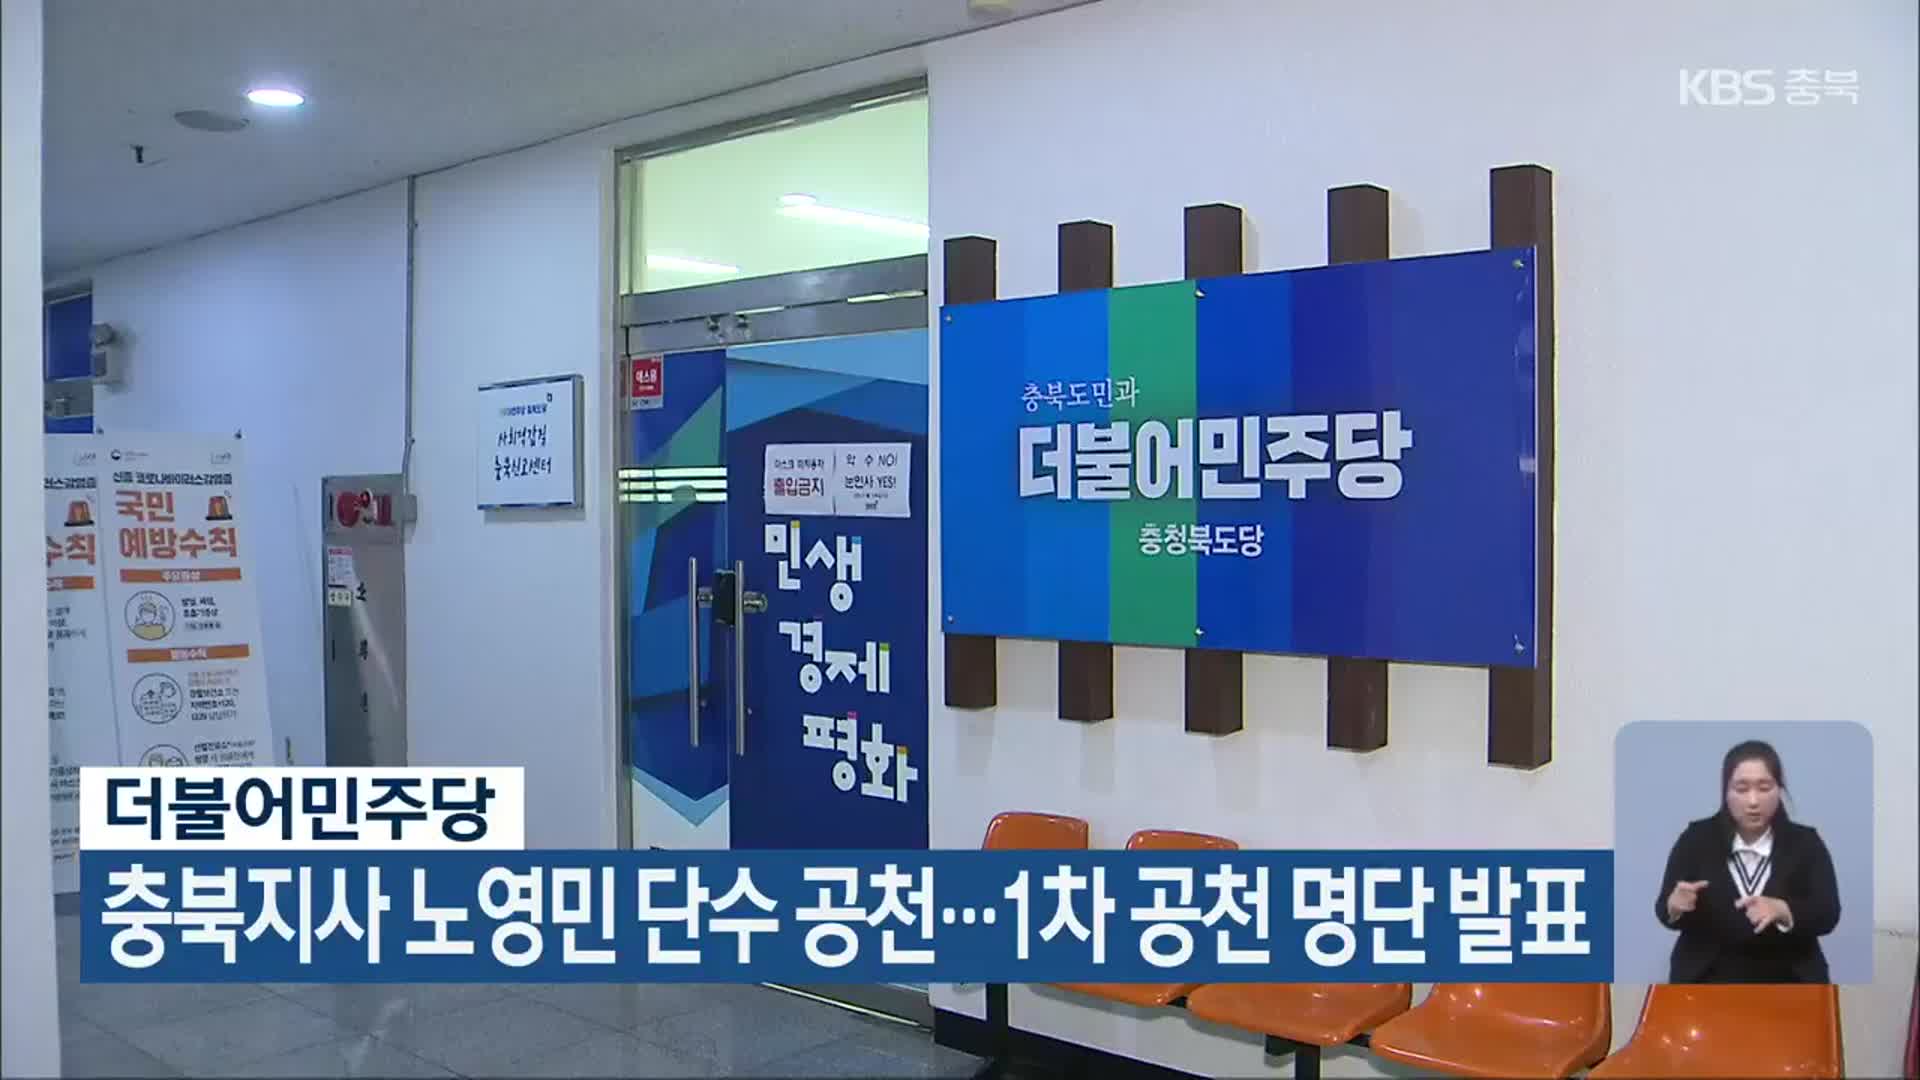 더불어민주당, 충북지사 노영민 단수 공천…1차 공천 명단 발표